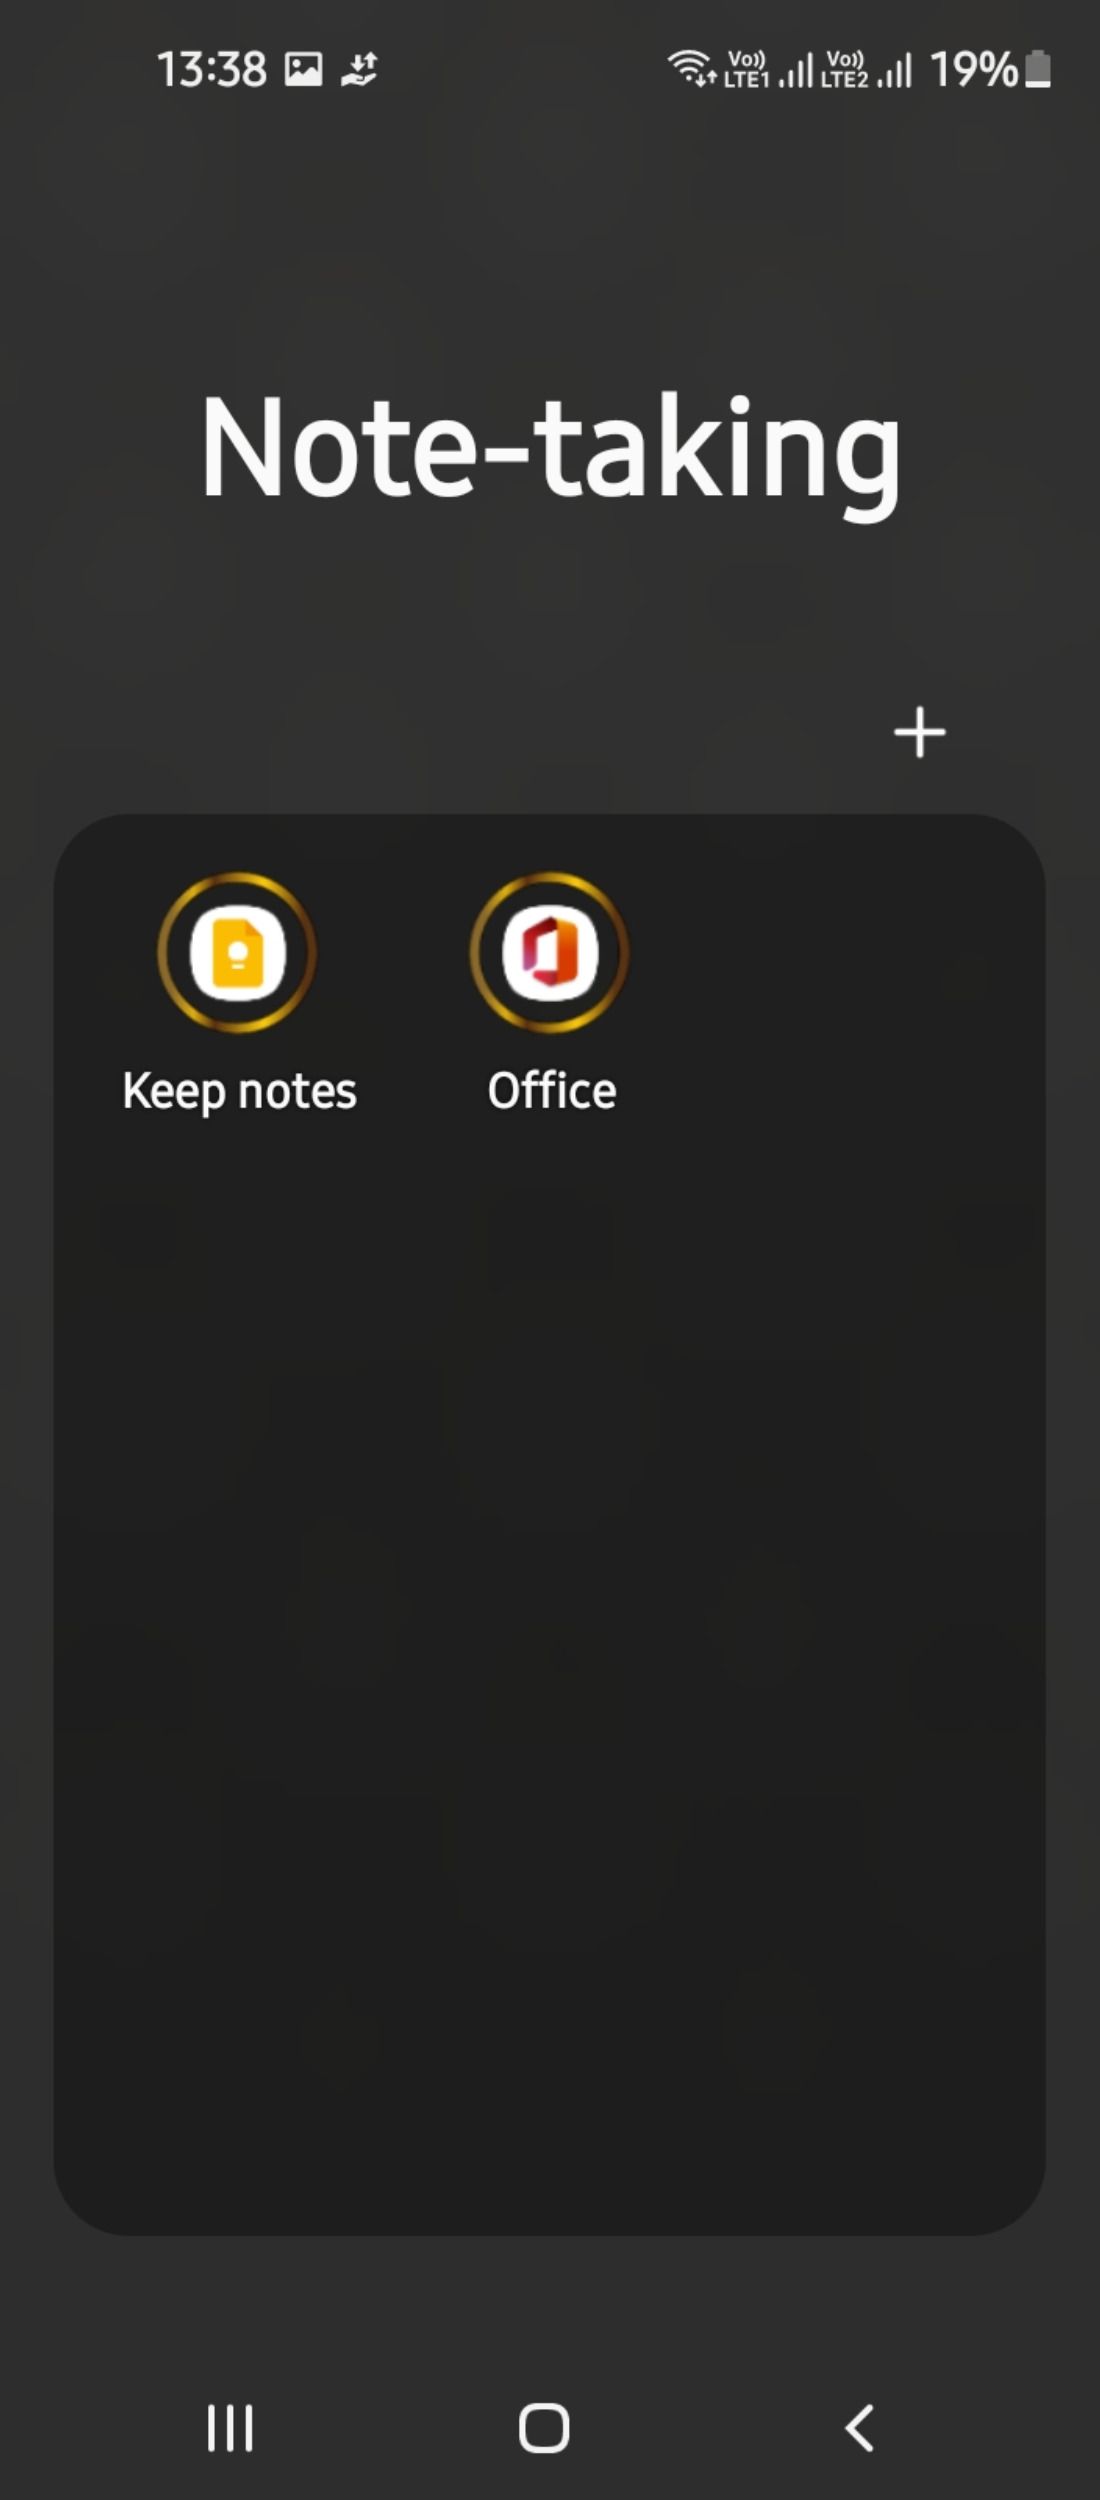 Note-taking apps categorized into folder